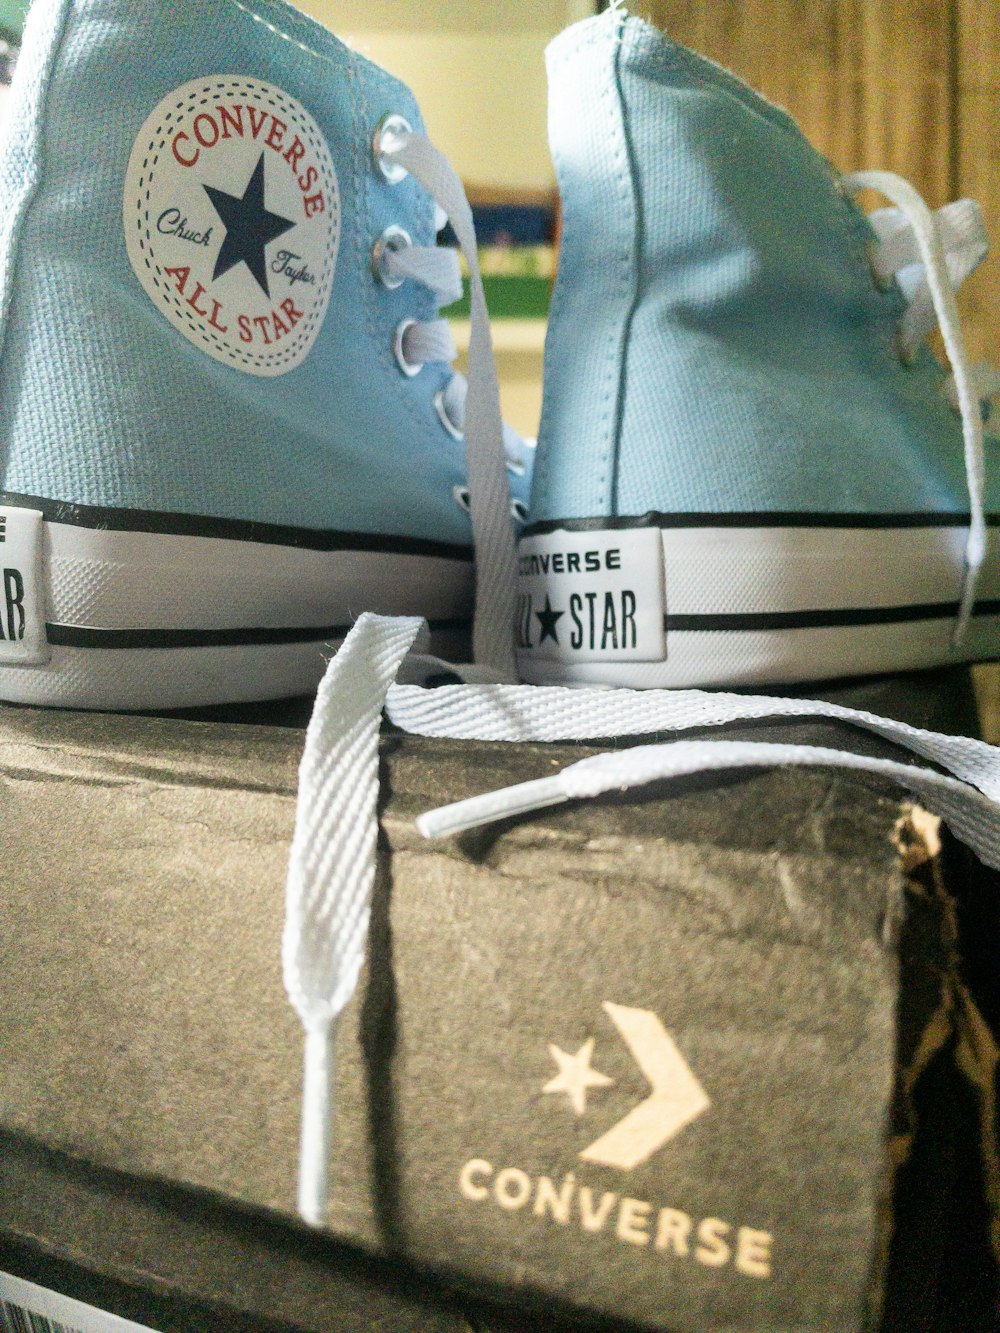 Un par de zapatos Converse azules encima de una caja